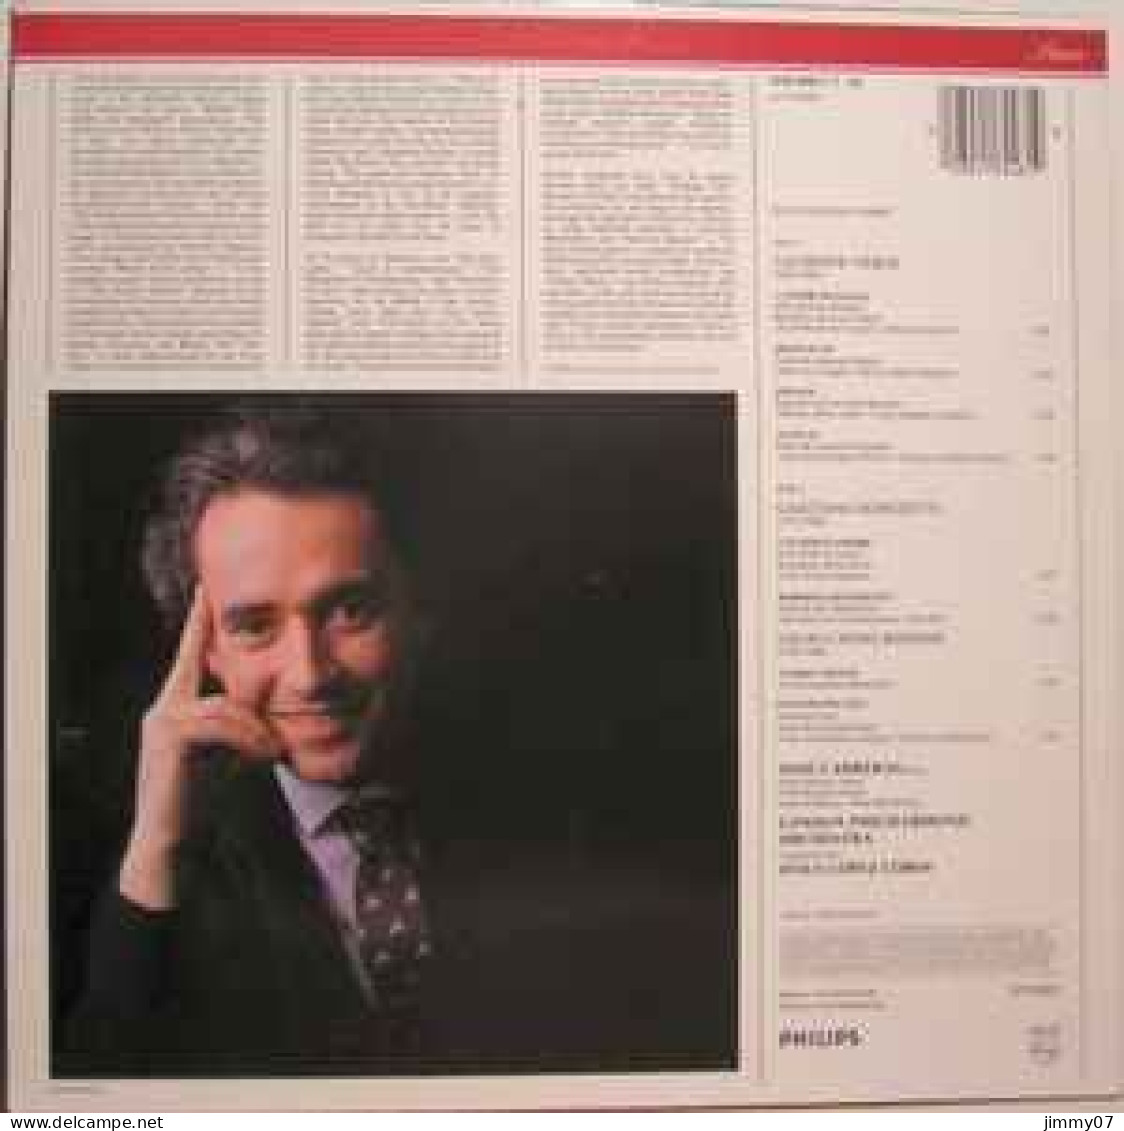 José Carreras - Verdi Donizetti Rossini (LP, RE) - Classical